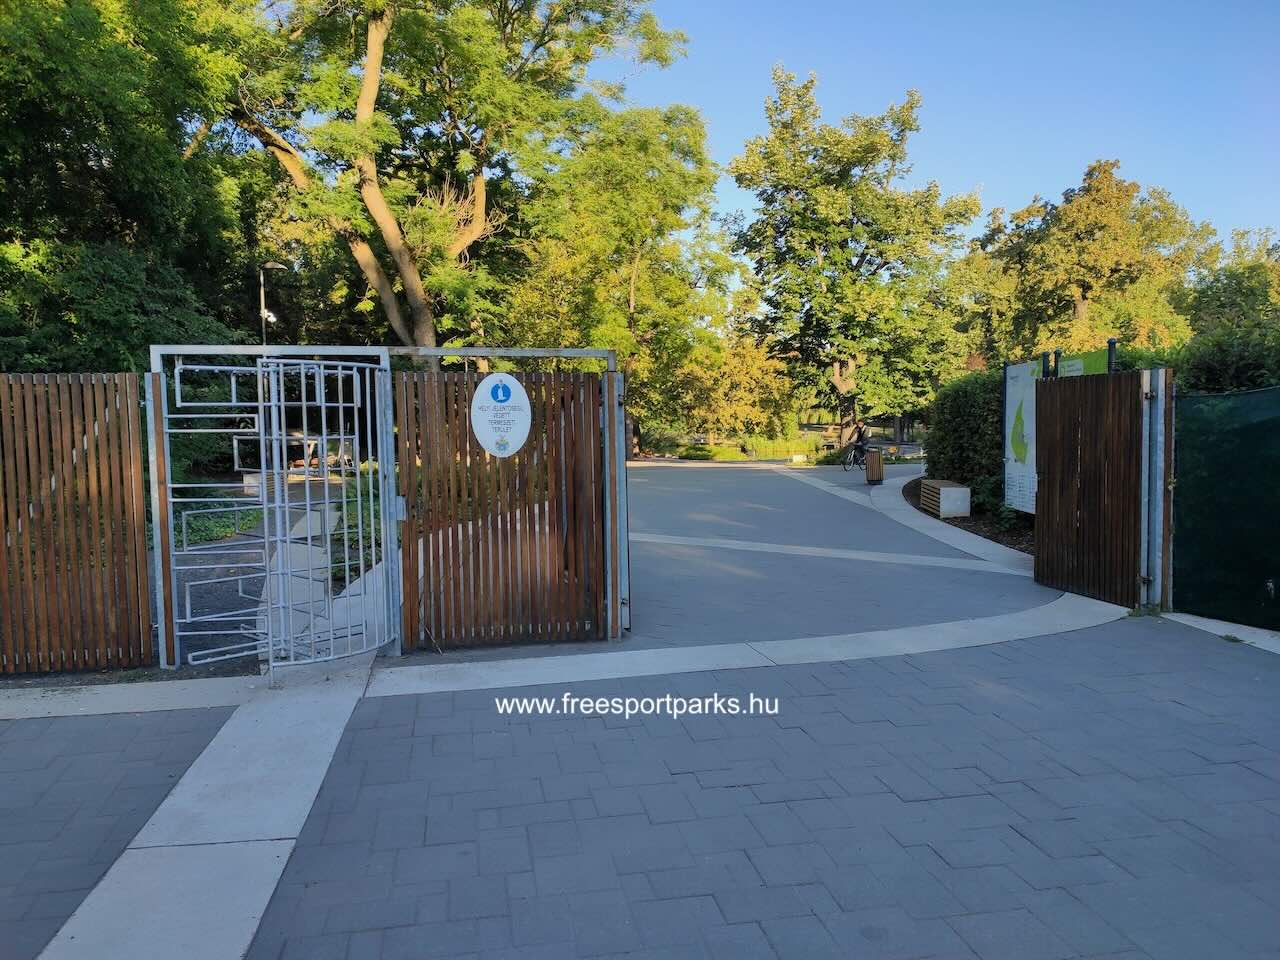 Nagyerdei park főbejárata 0-24 nyitva, Békás-tó, Debrecen - Free Sport Parks Térkép